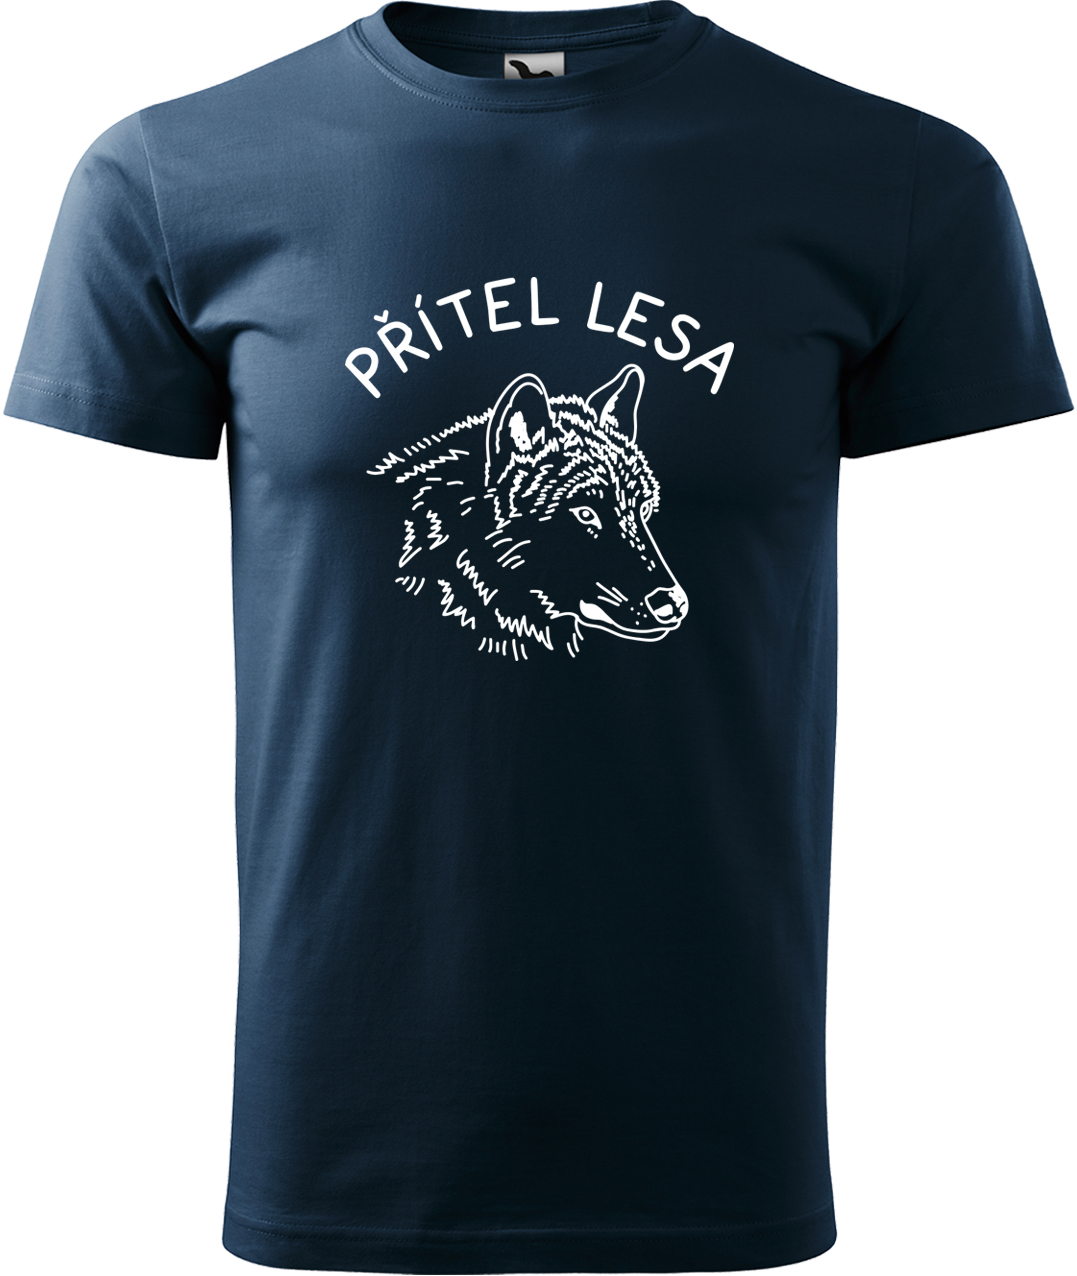 Pánské tričko s vlkem - Přítel lesa Velikost: 4XL, Barva: Námořní modrá (02), Střih: pánský